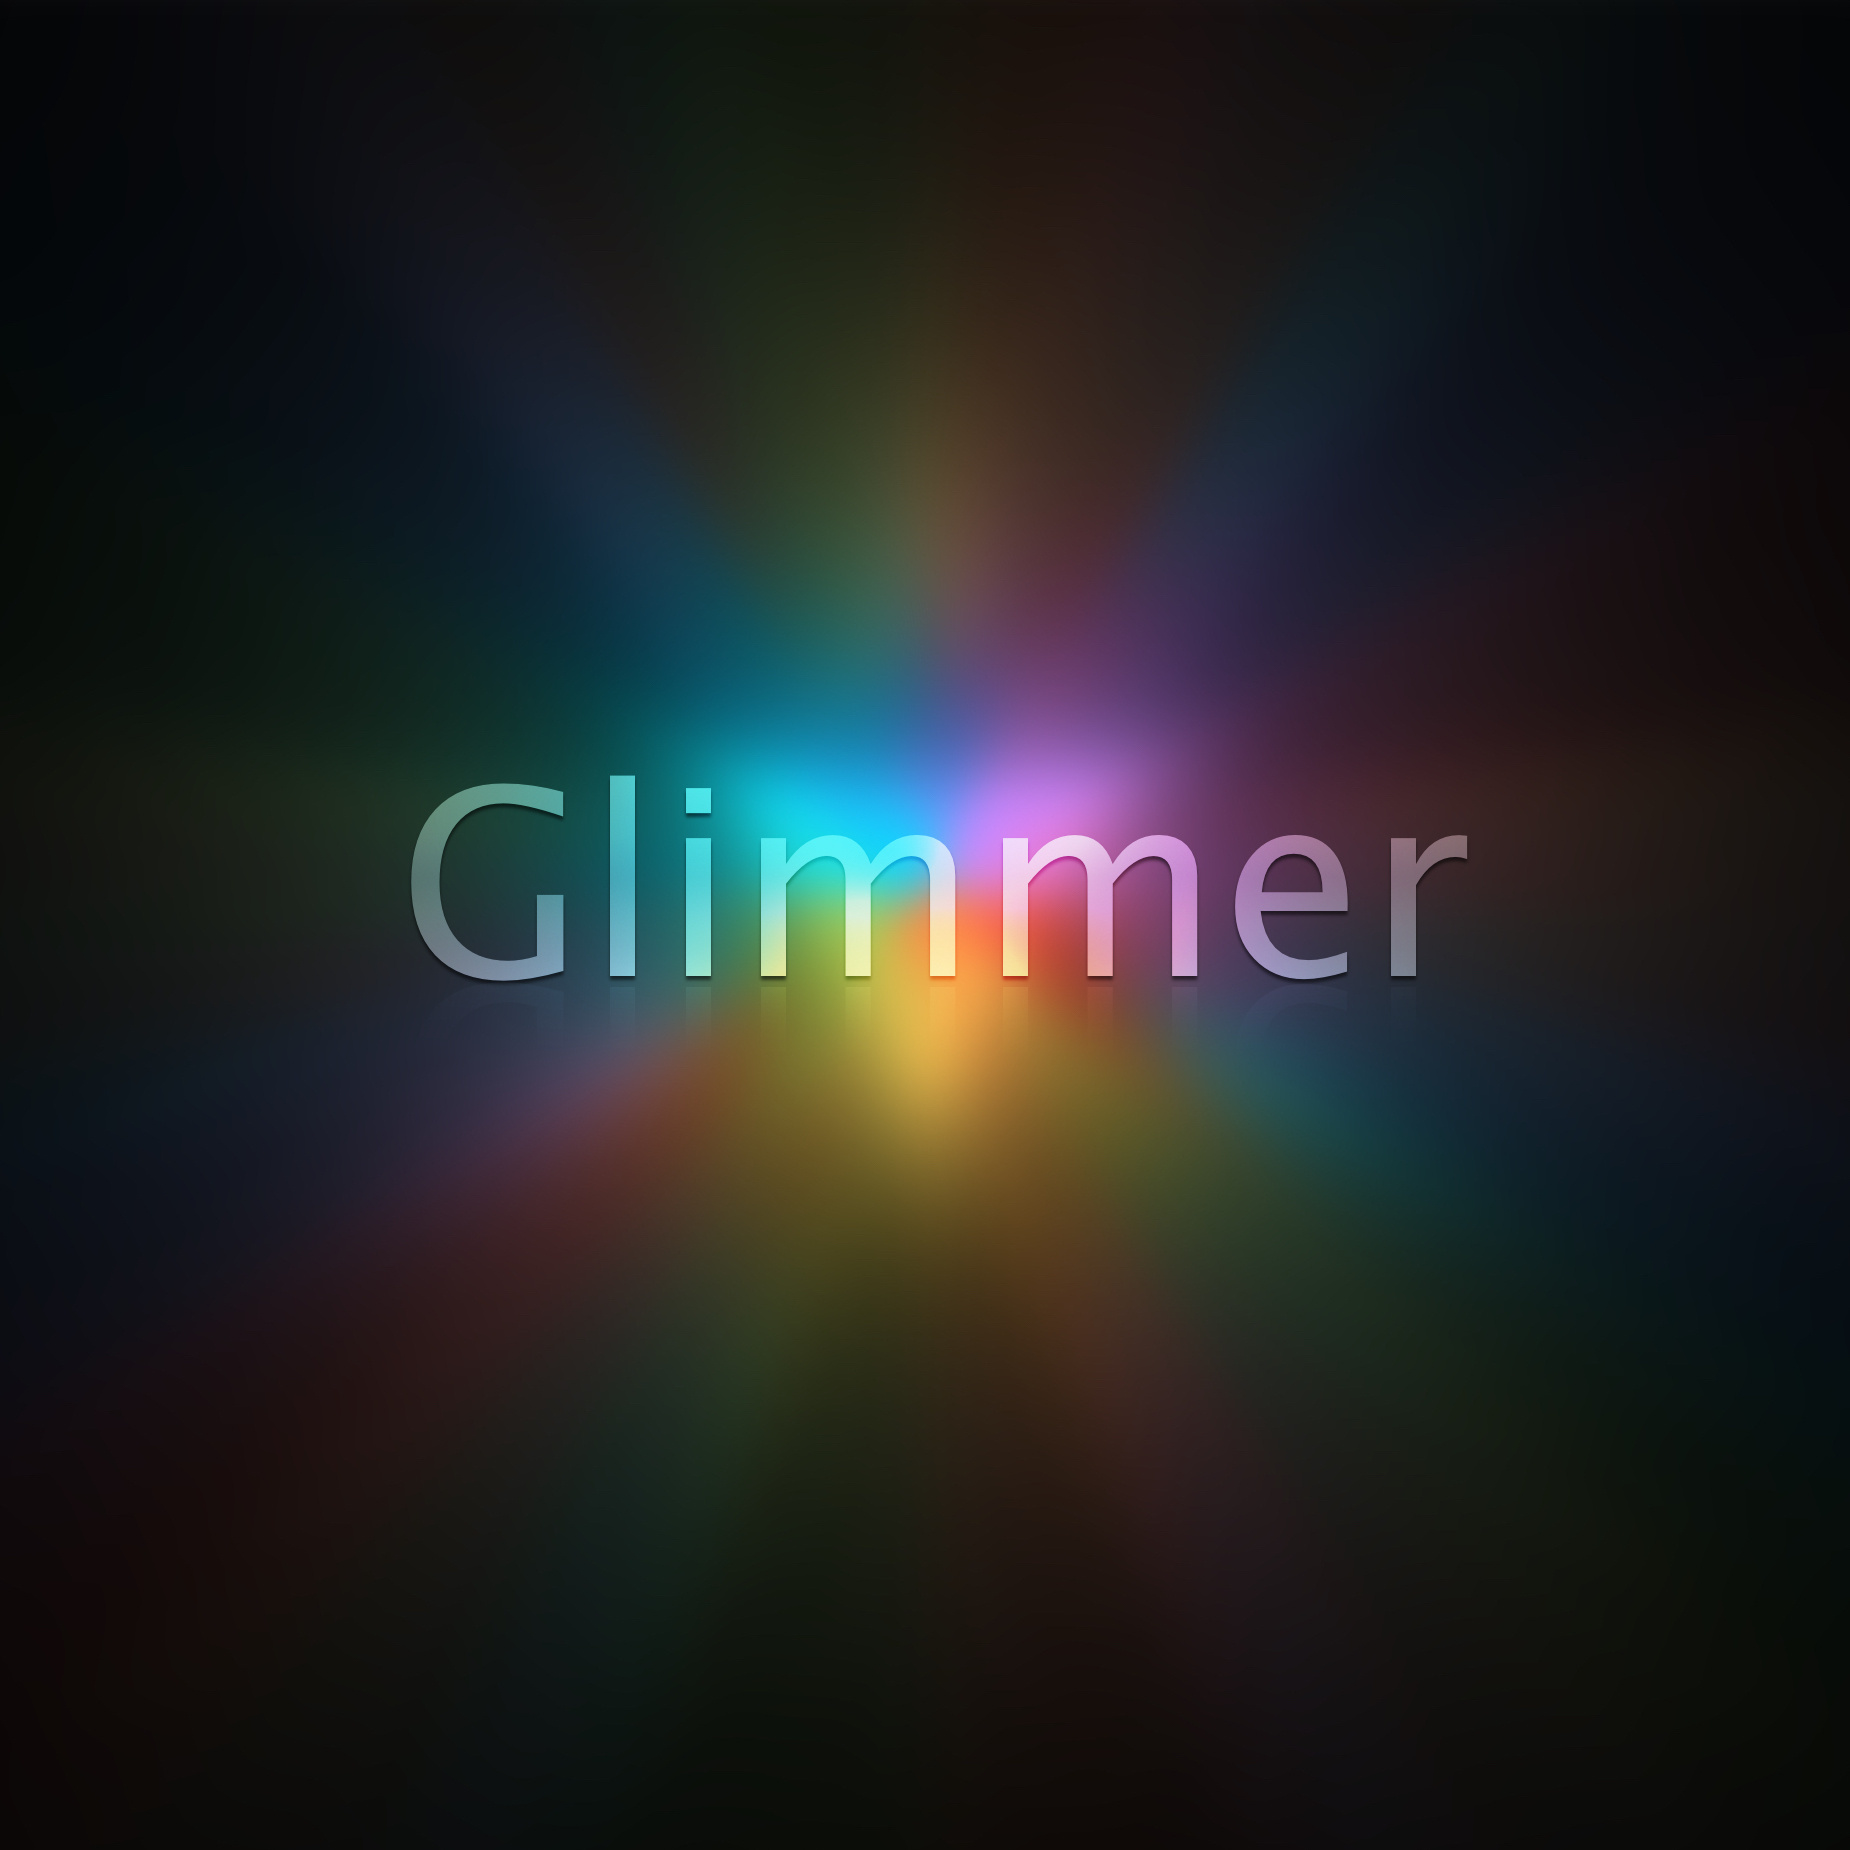 Glimmer(動畫《納米核心》主題曲)